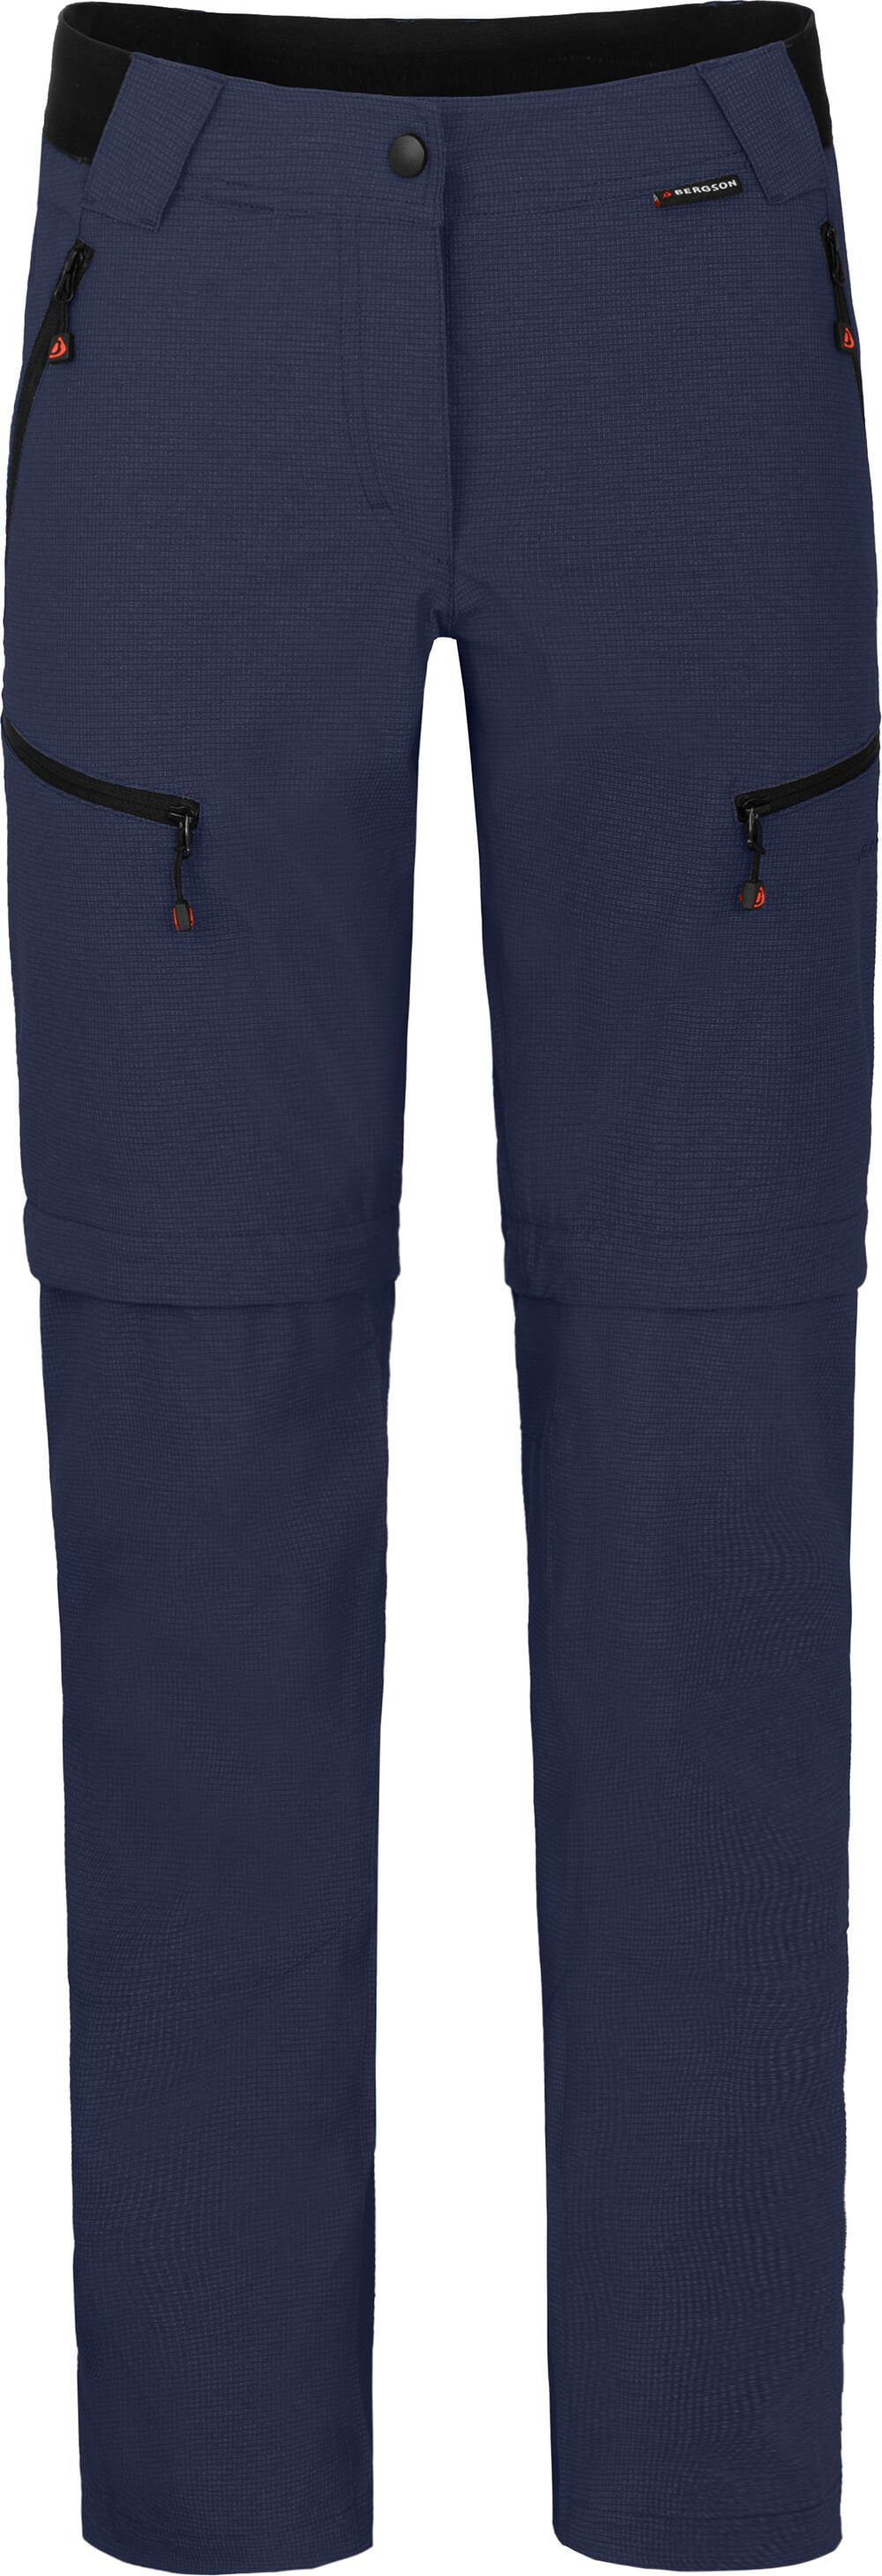 Zipp-Off peacoat robust, blau Kurzgrößen, Wanderhose, Zip-off-Hose PORI Damen elastisch, Bergson